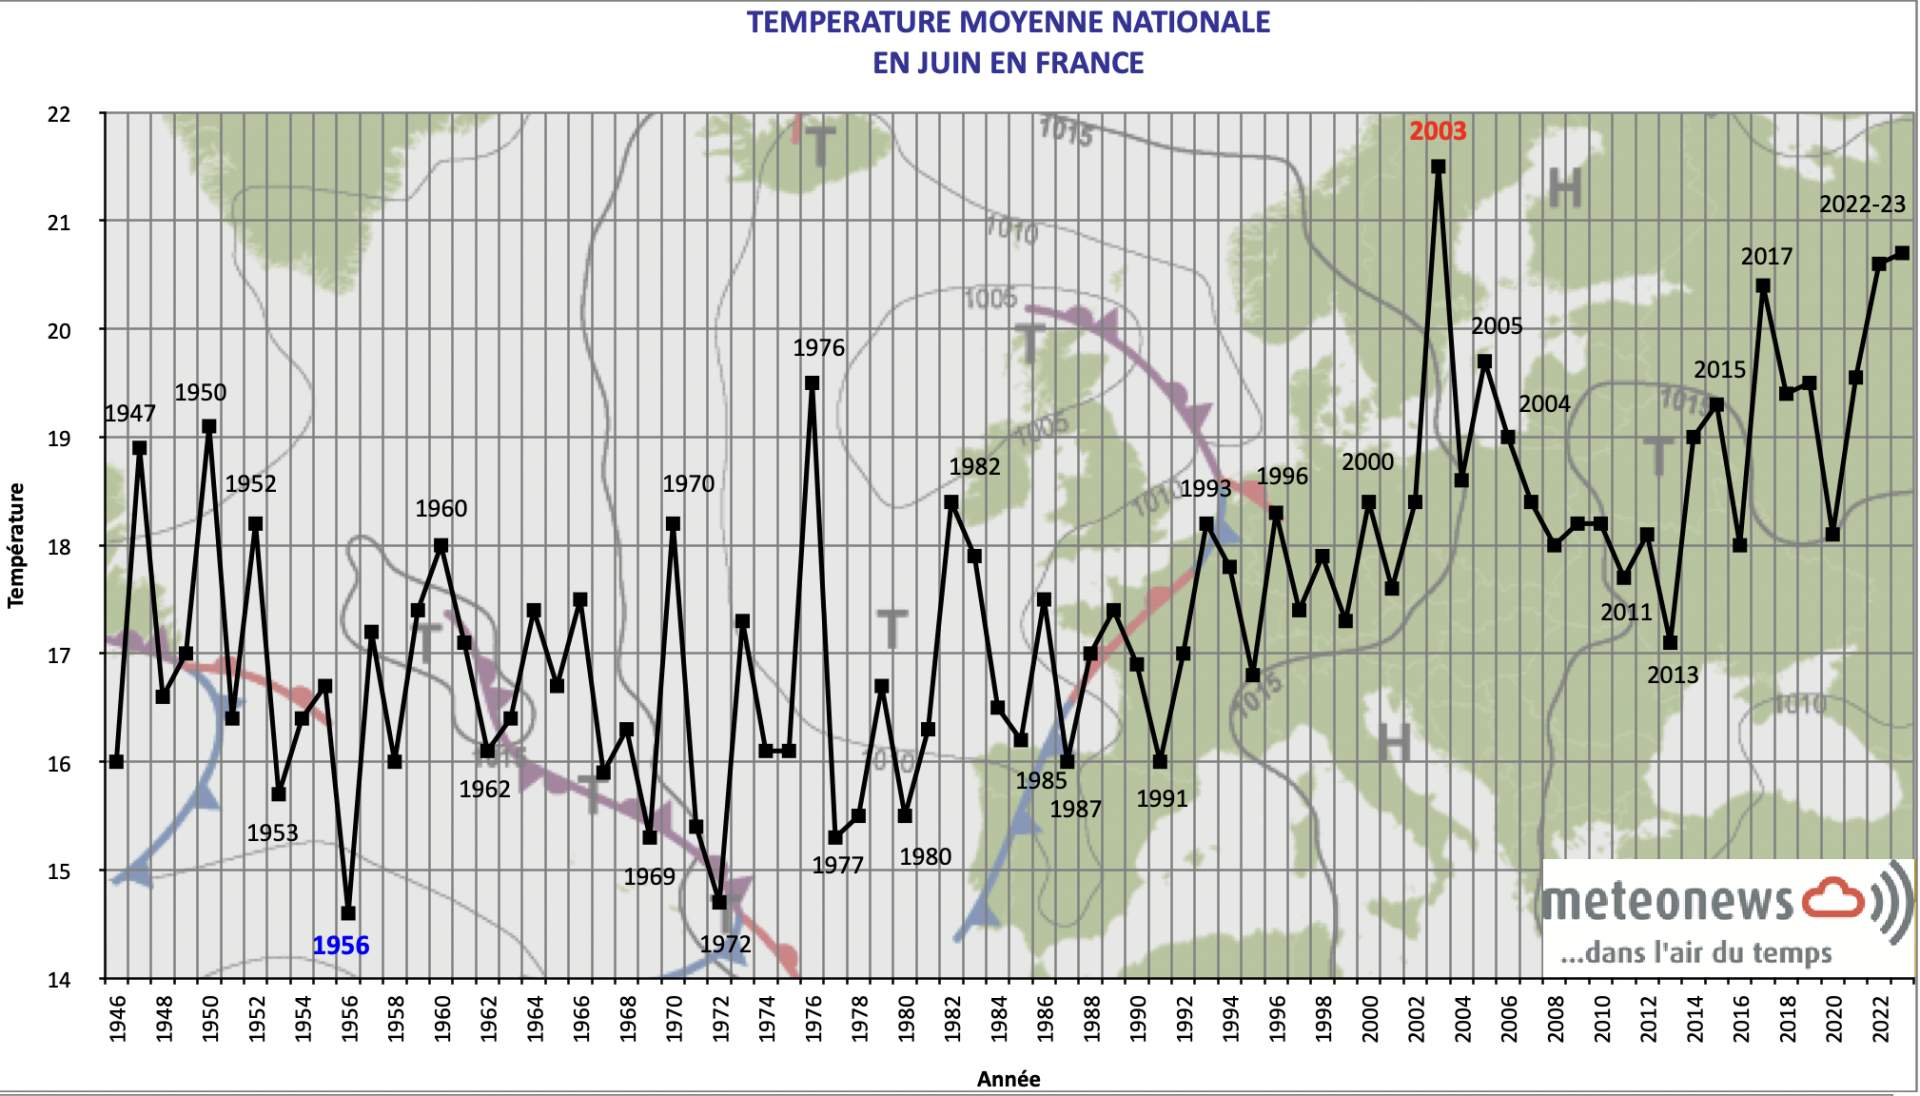 Température moyenne mensuelle nationale en juin en France; Source: MeteoNews